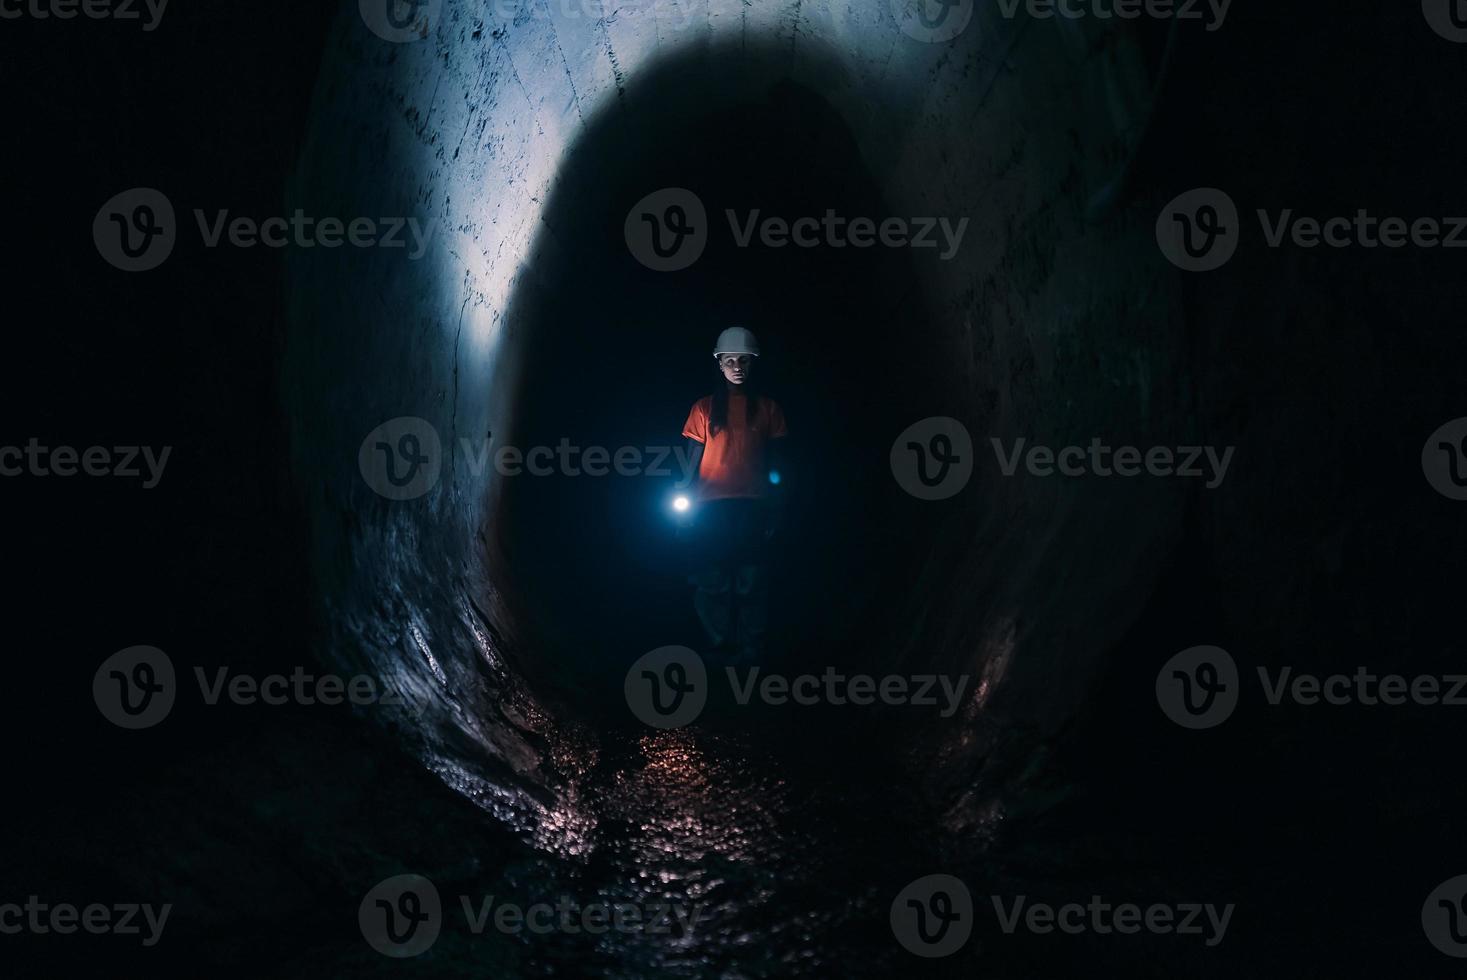 escavadora feminina com lanterna explora o túnel foto